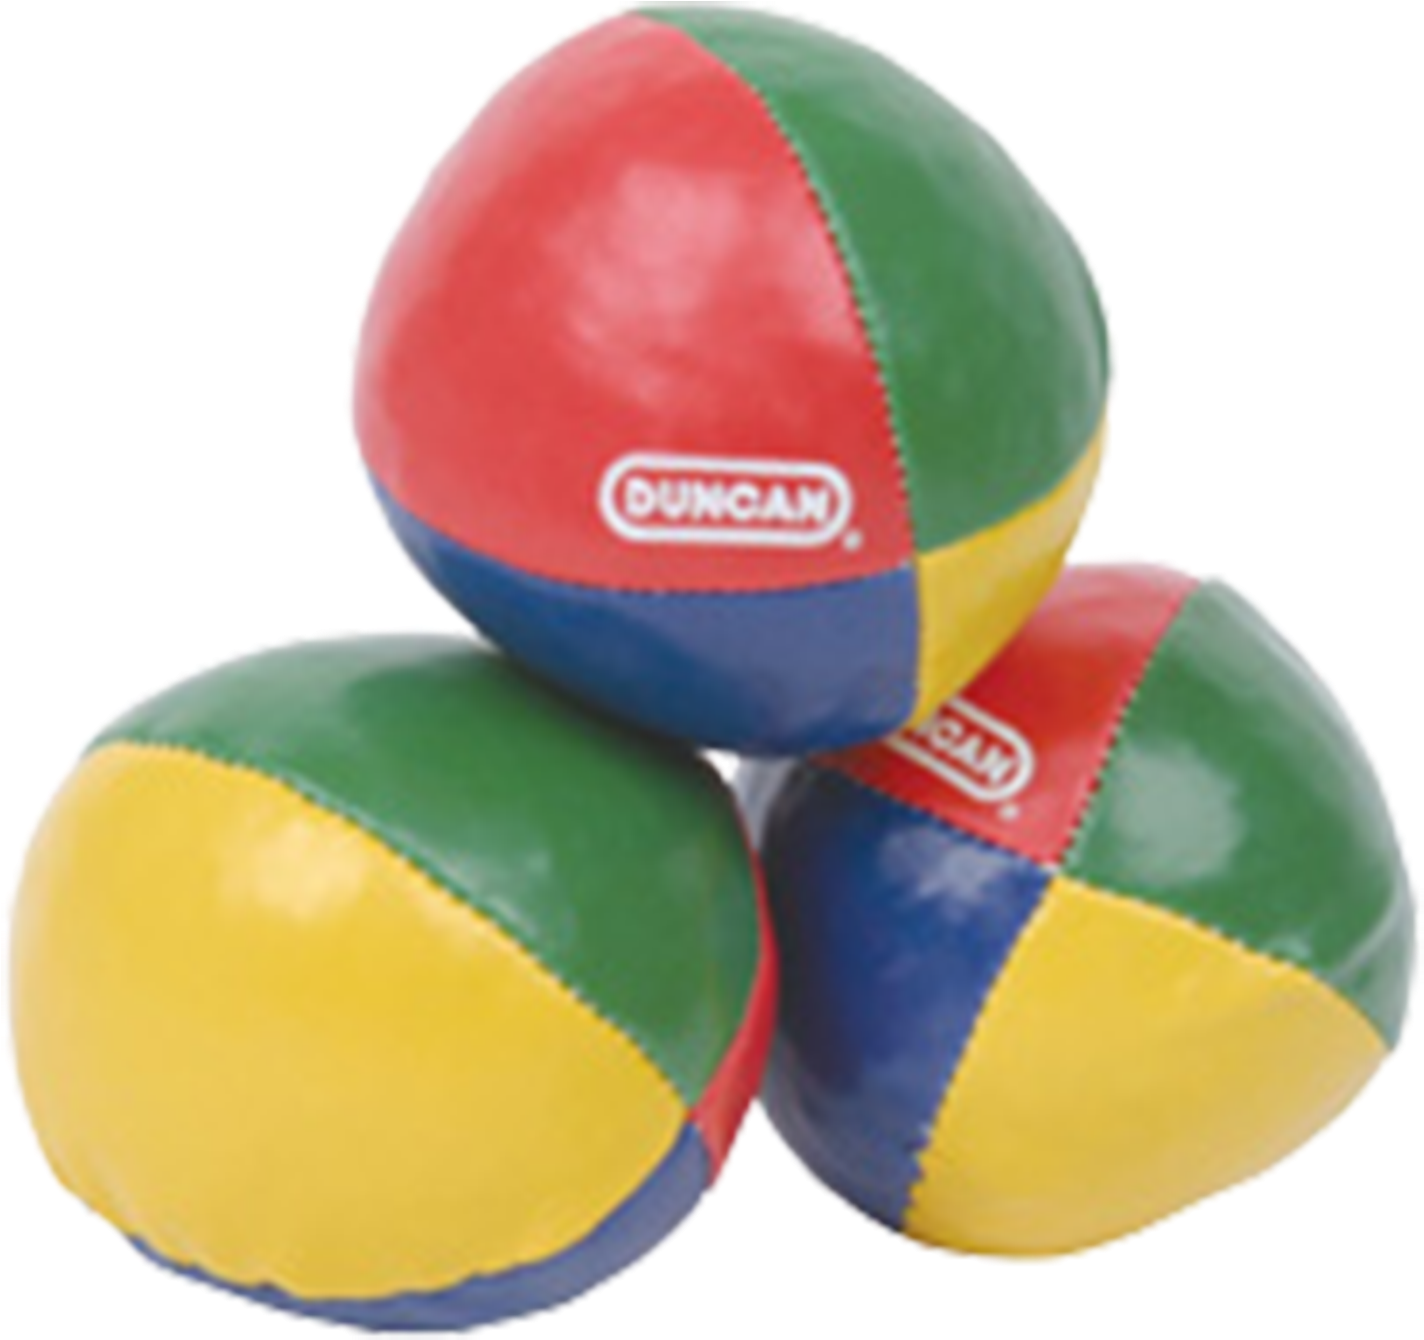 Duncan Juggling Balls Clipart (1500x1500), Png Download